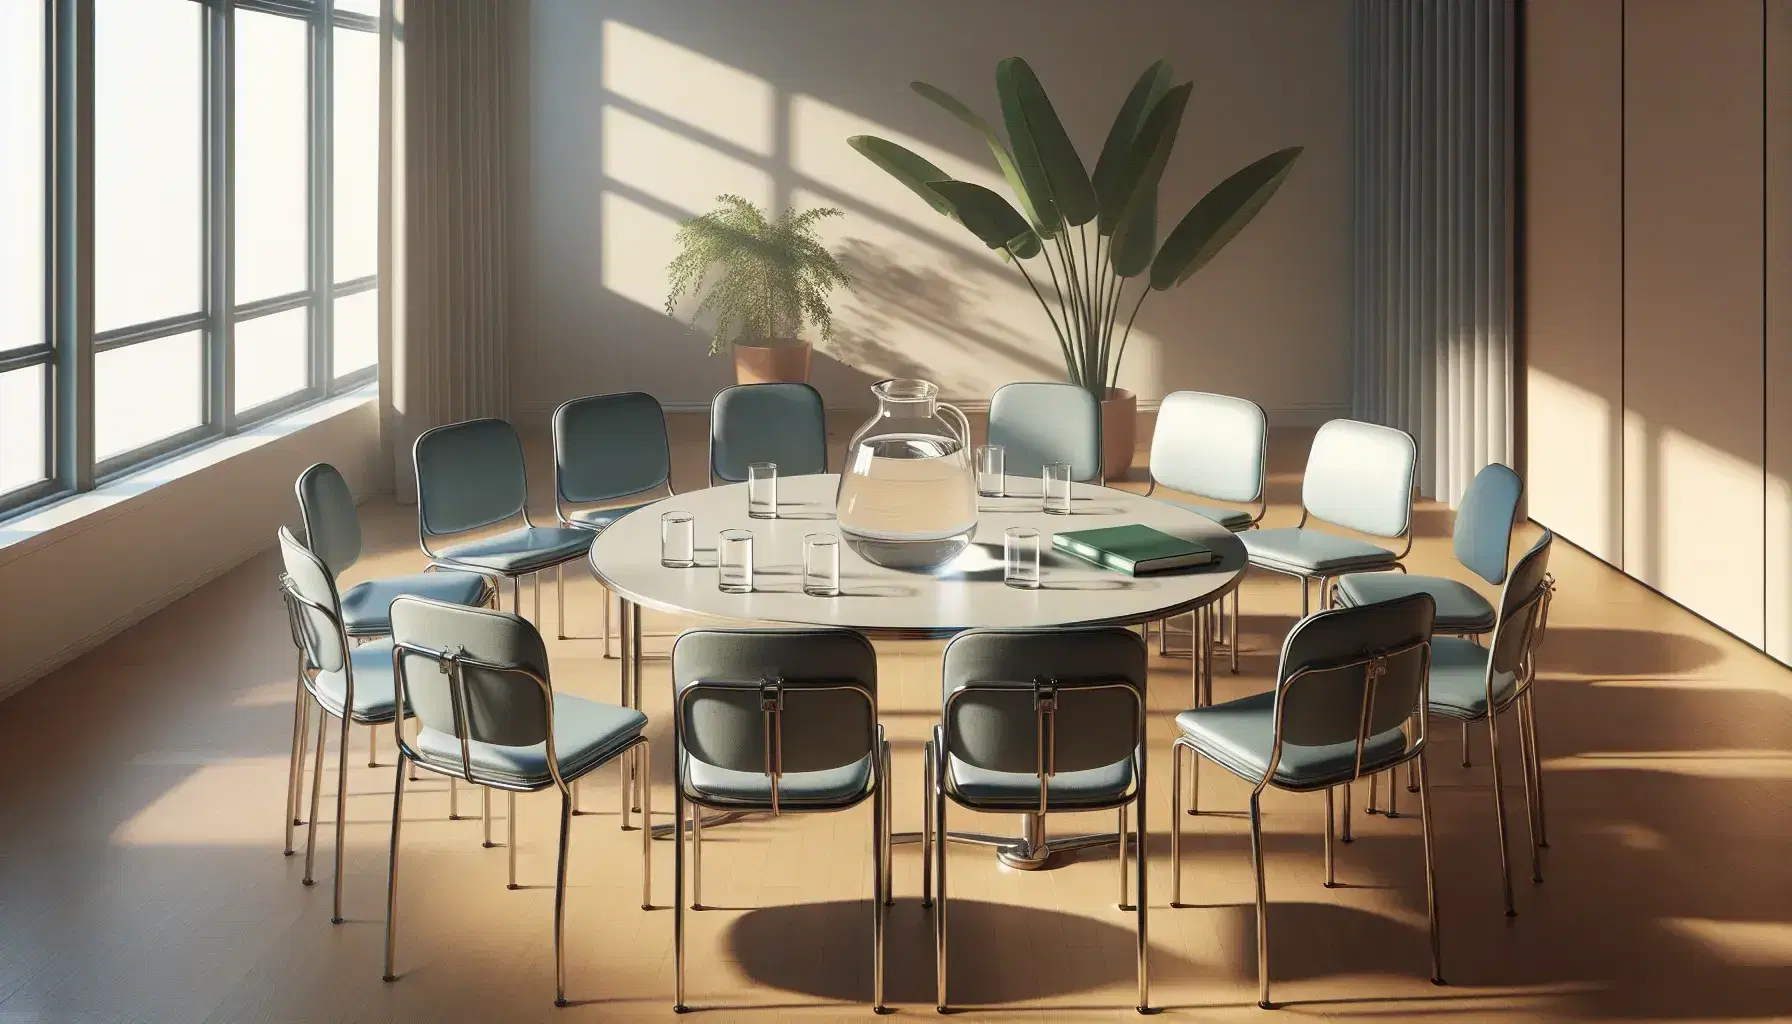 Círculo de sillas con asientos azules y mesa redonda con jarra de agua y vasos en sala iluminada naturalmente, sin personas.